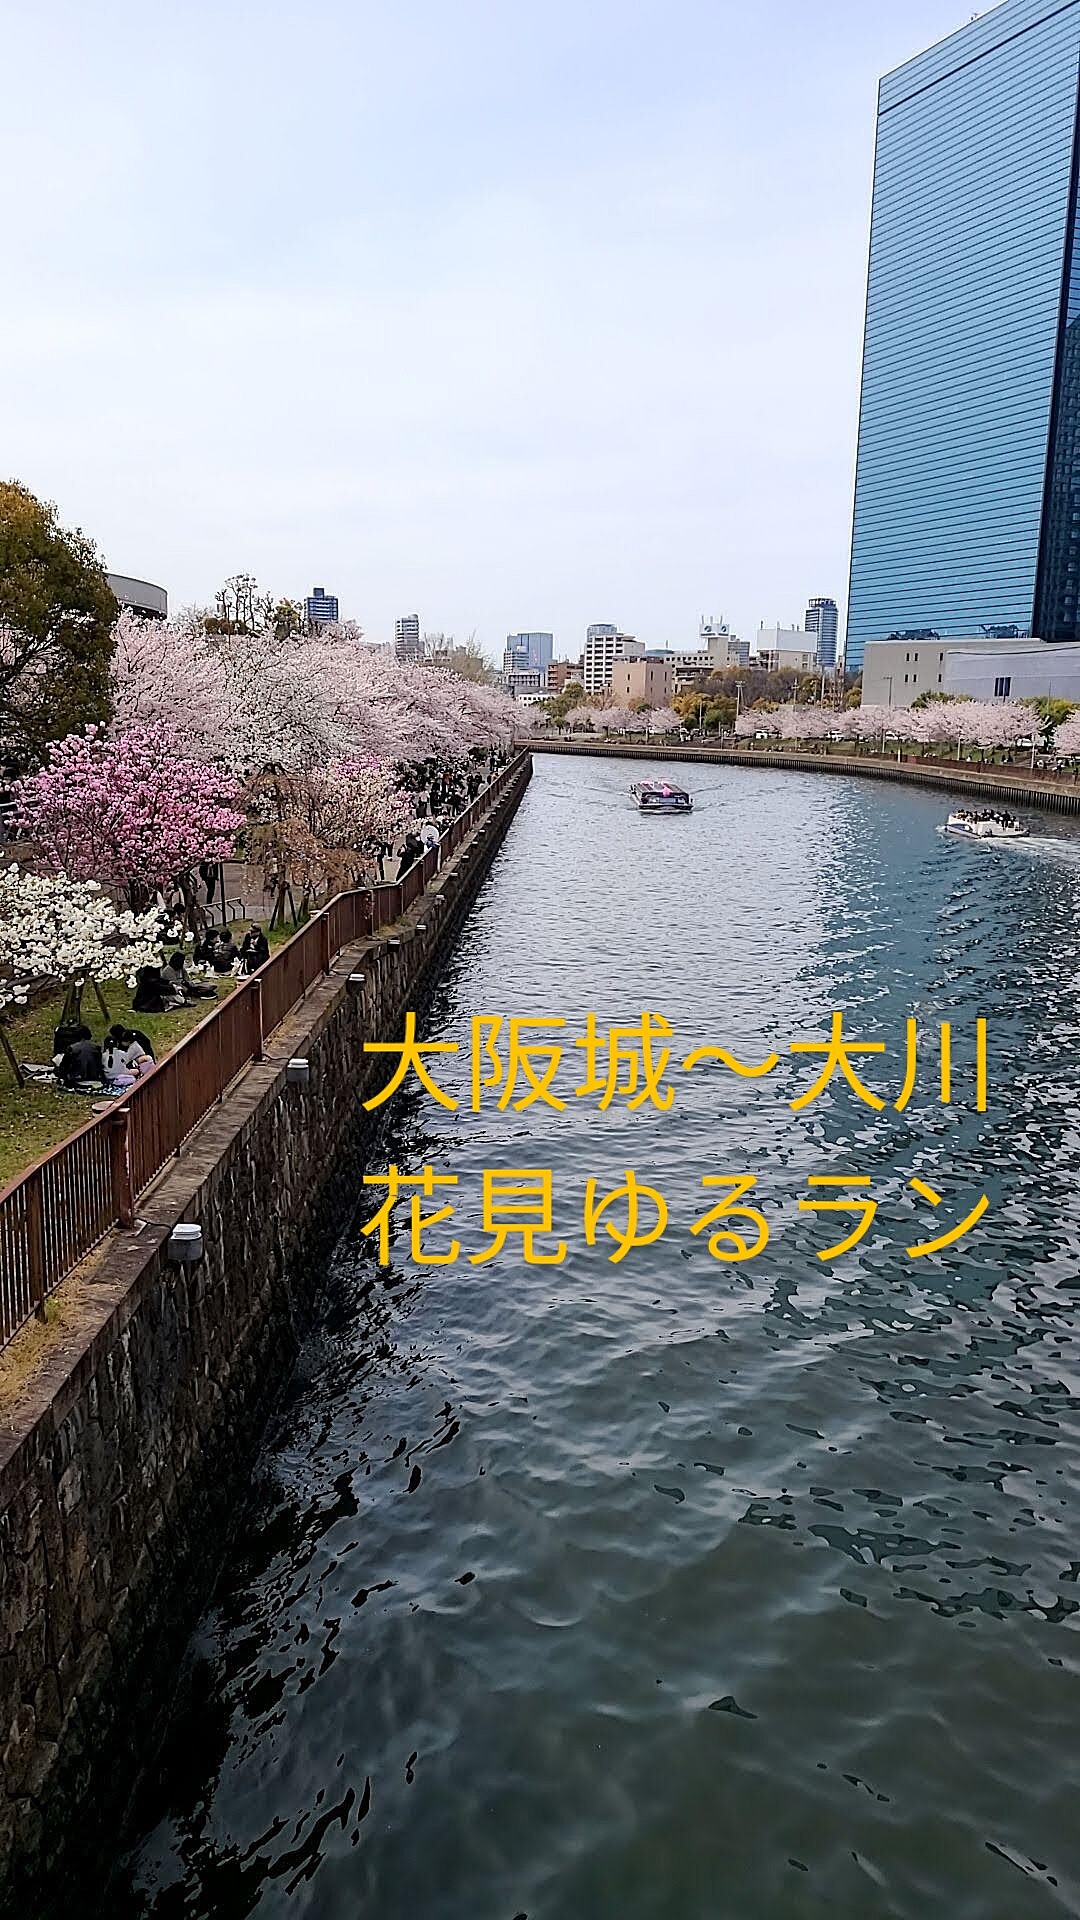 【春のお花見ゆるゆる朝ランat大阪城】桜見ながら心地よい朝ランを楽しもう🌸🏃